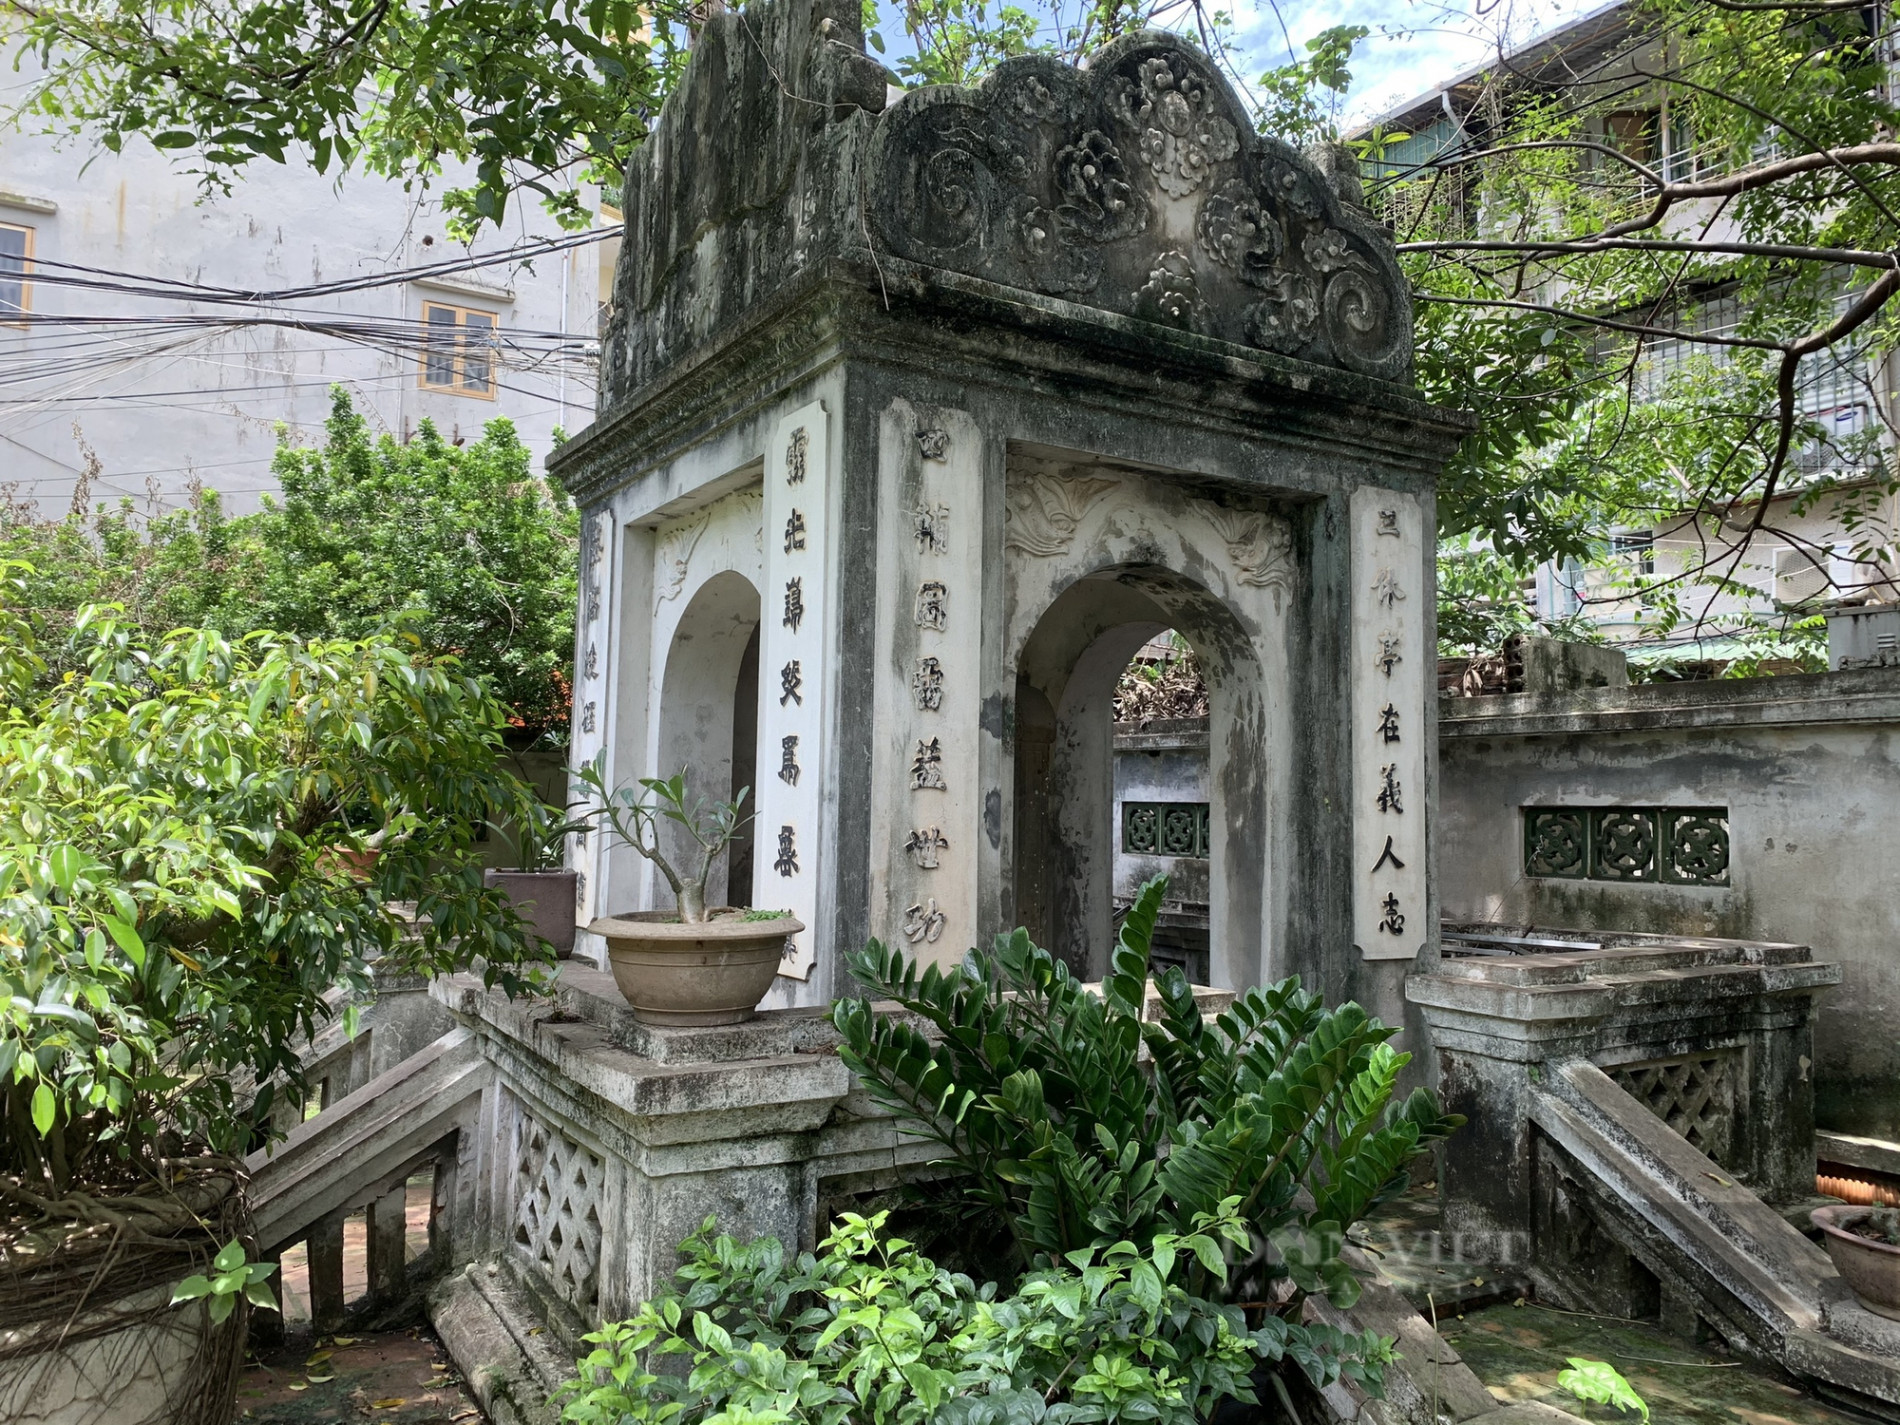 Kiến trúc độc đáo bên trong khu lăng mộ cổ trăm năm tuổi ở giữa lòng Thủ đô - Ảnh 9.